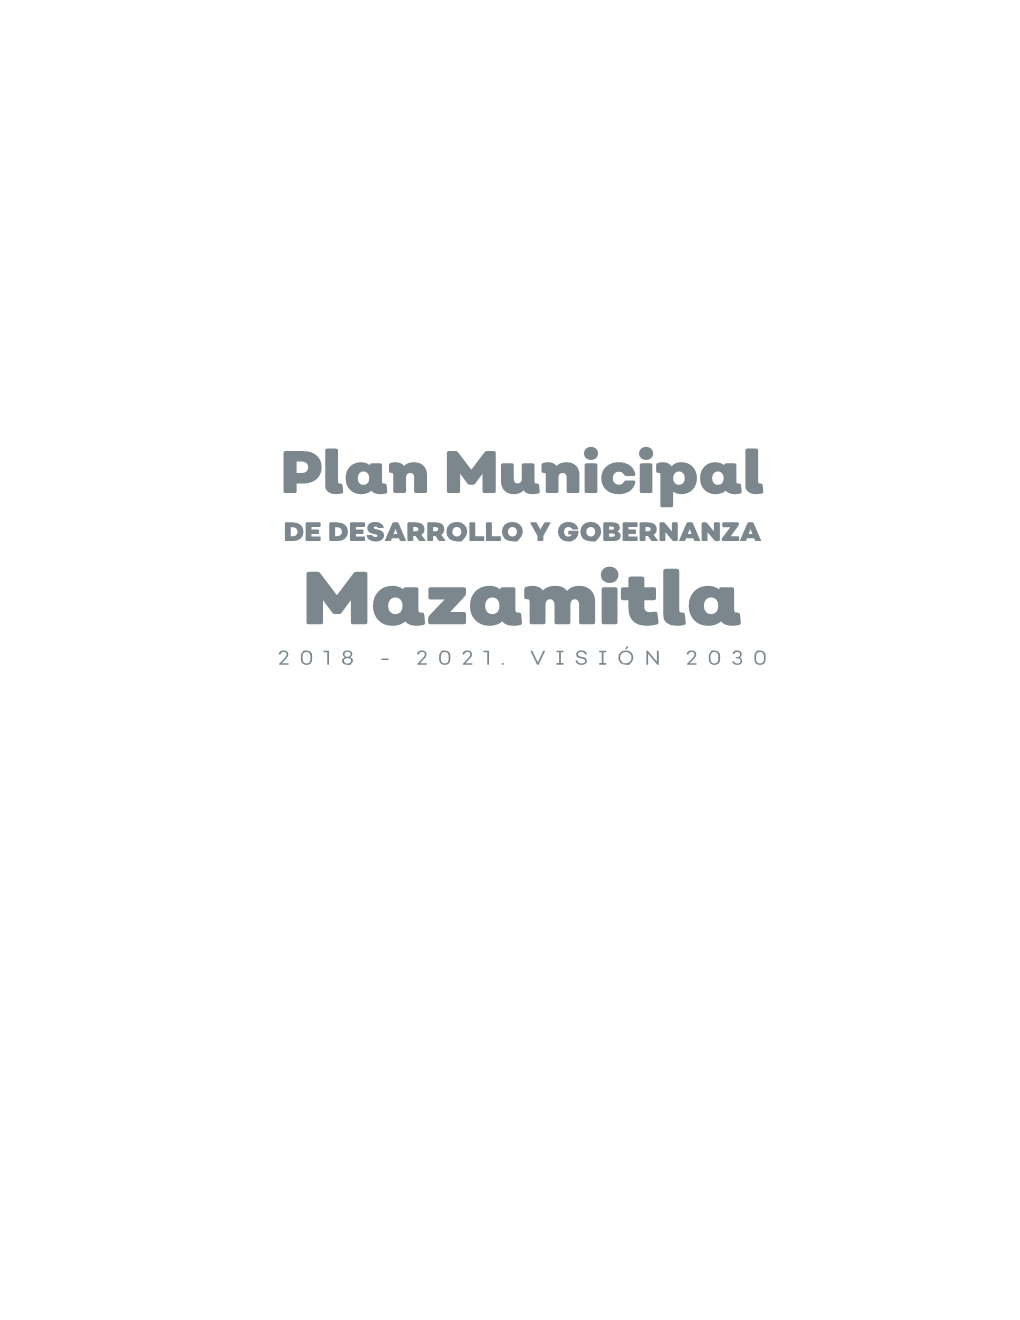 DE DESARROLLO Y GOBERNANZA Mazamitla 2018 - 2021